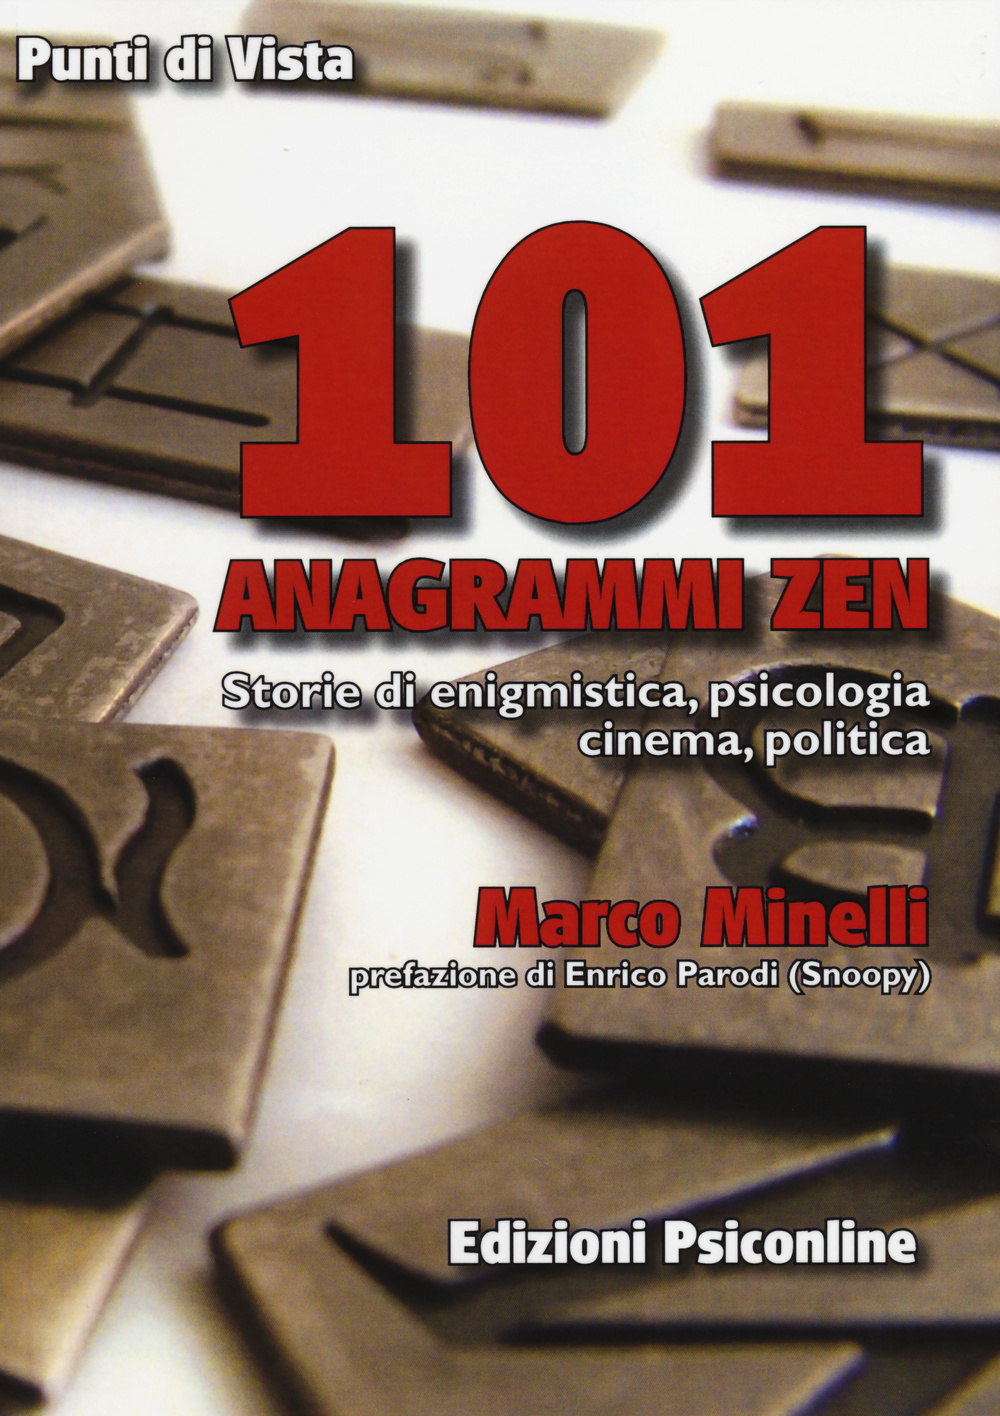 101 anagrammi zen. Storia di enigmistica, psicologia, cinema, politica